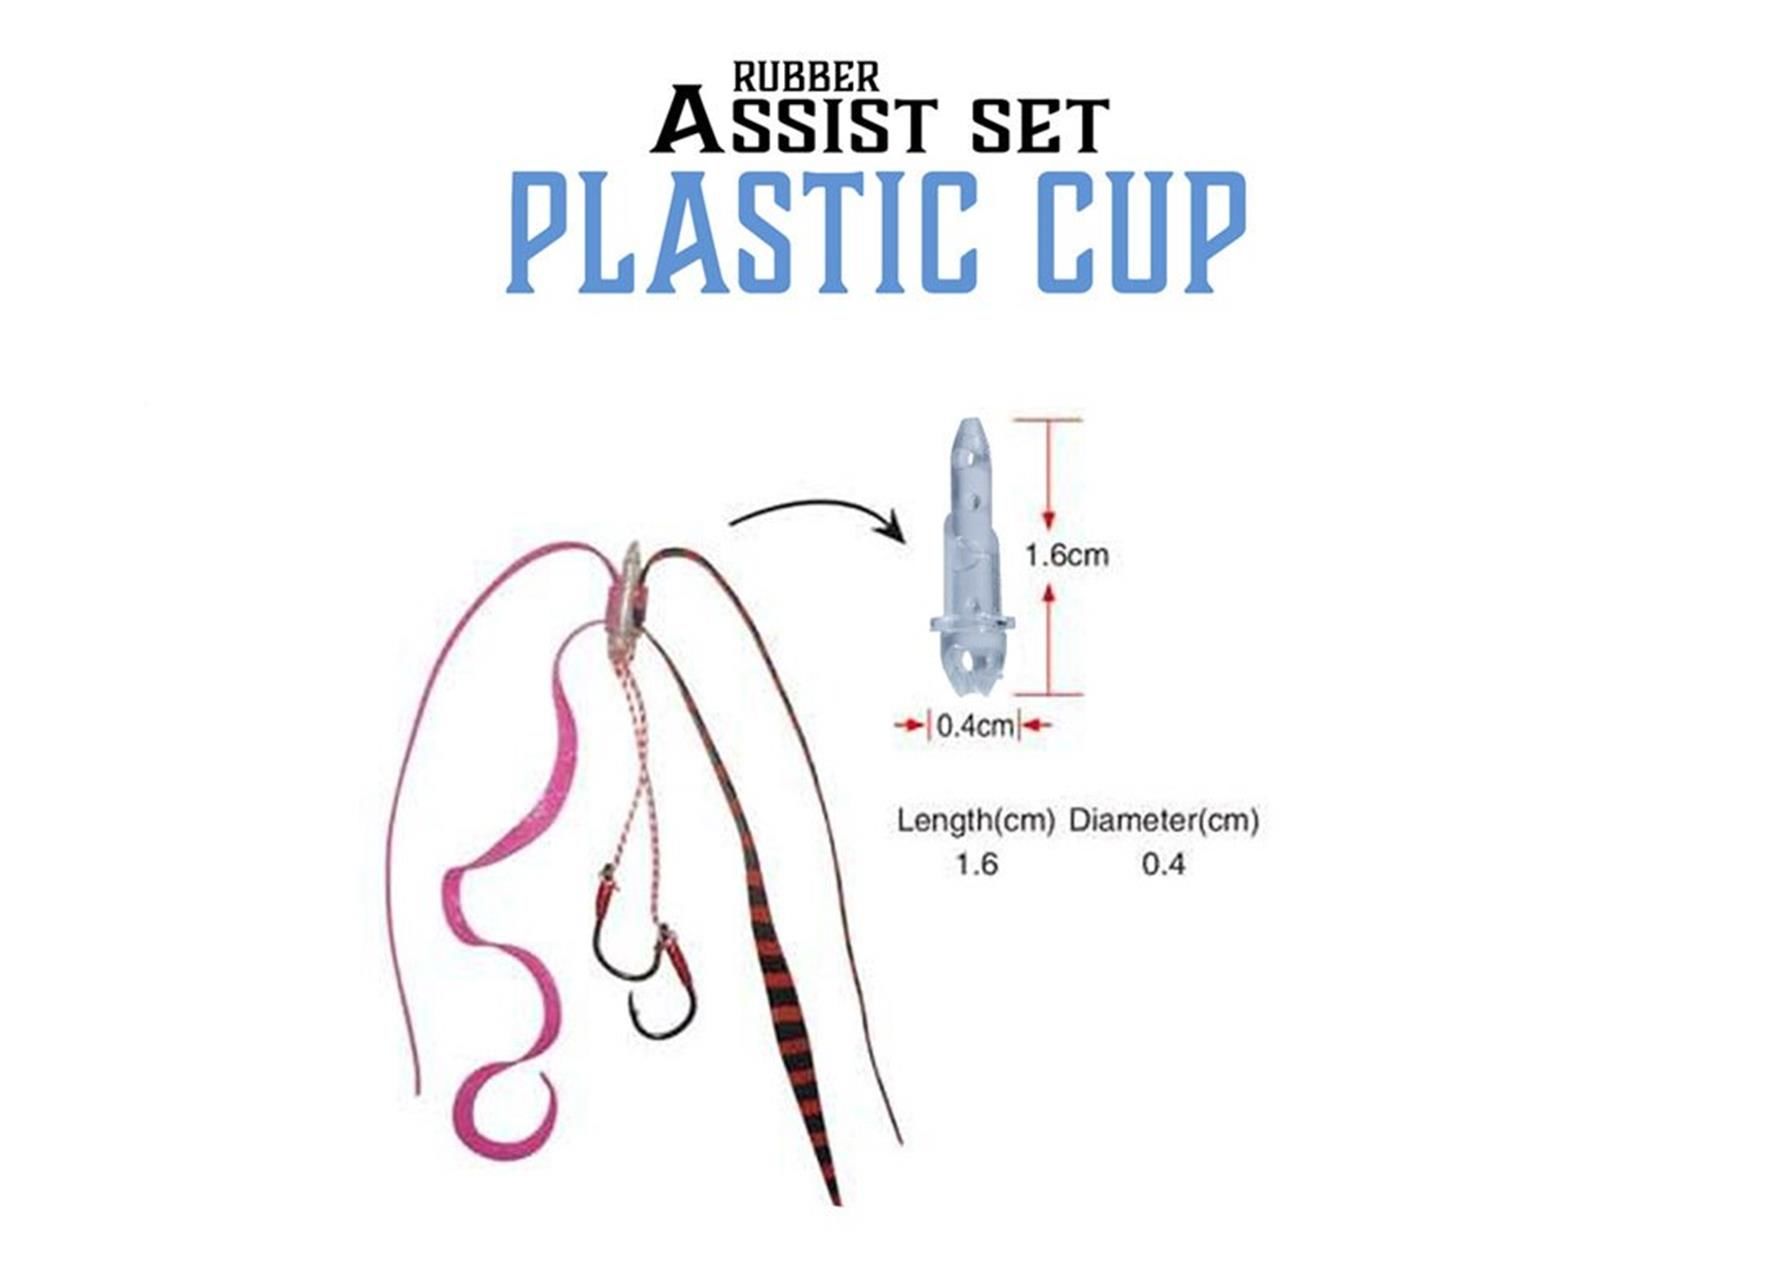 Fujin Rubber Assist Set Plastic Cup Aksesuar